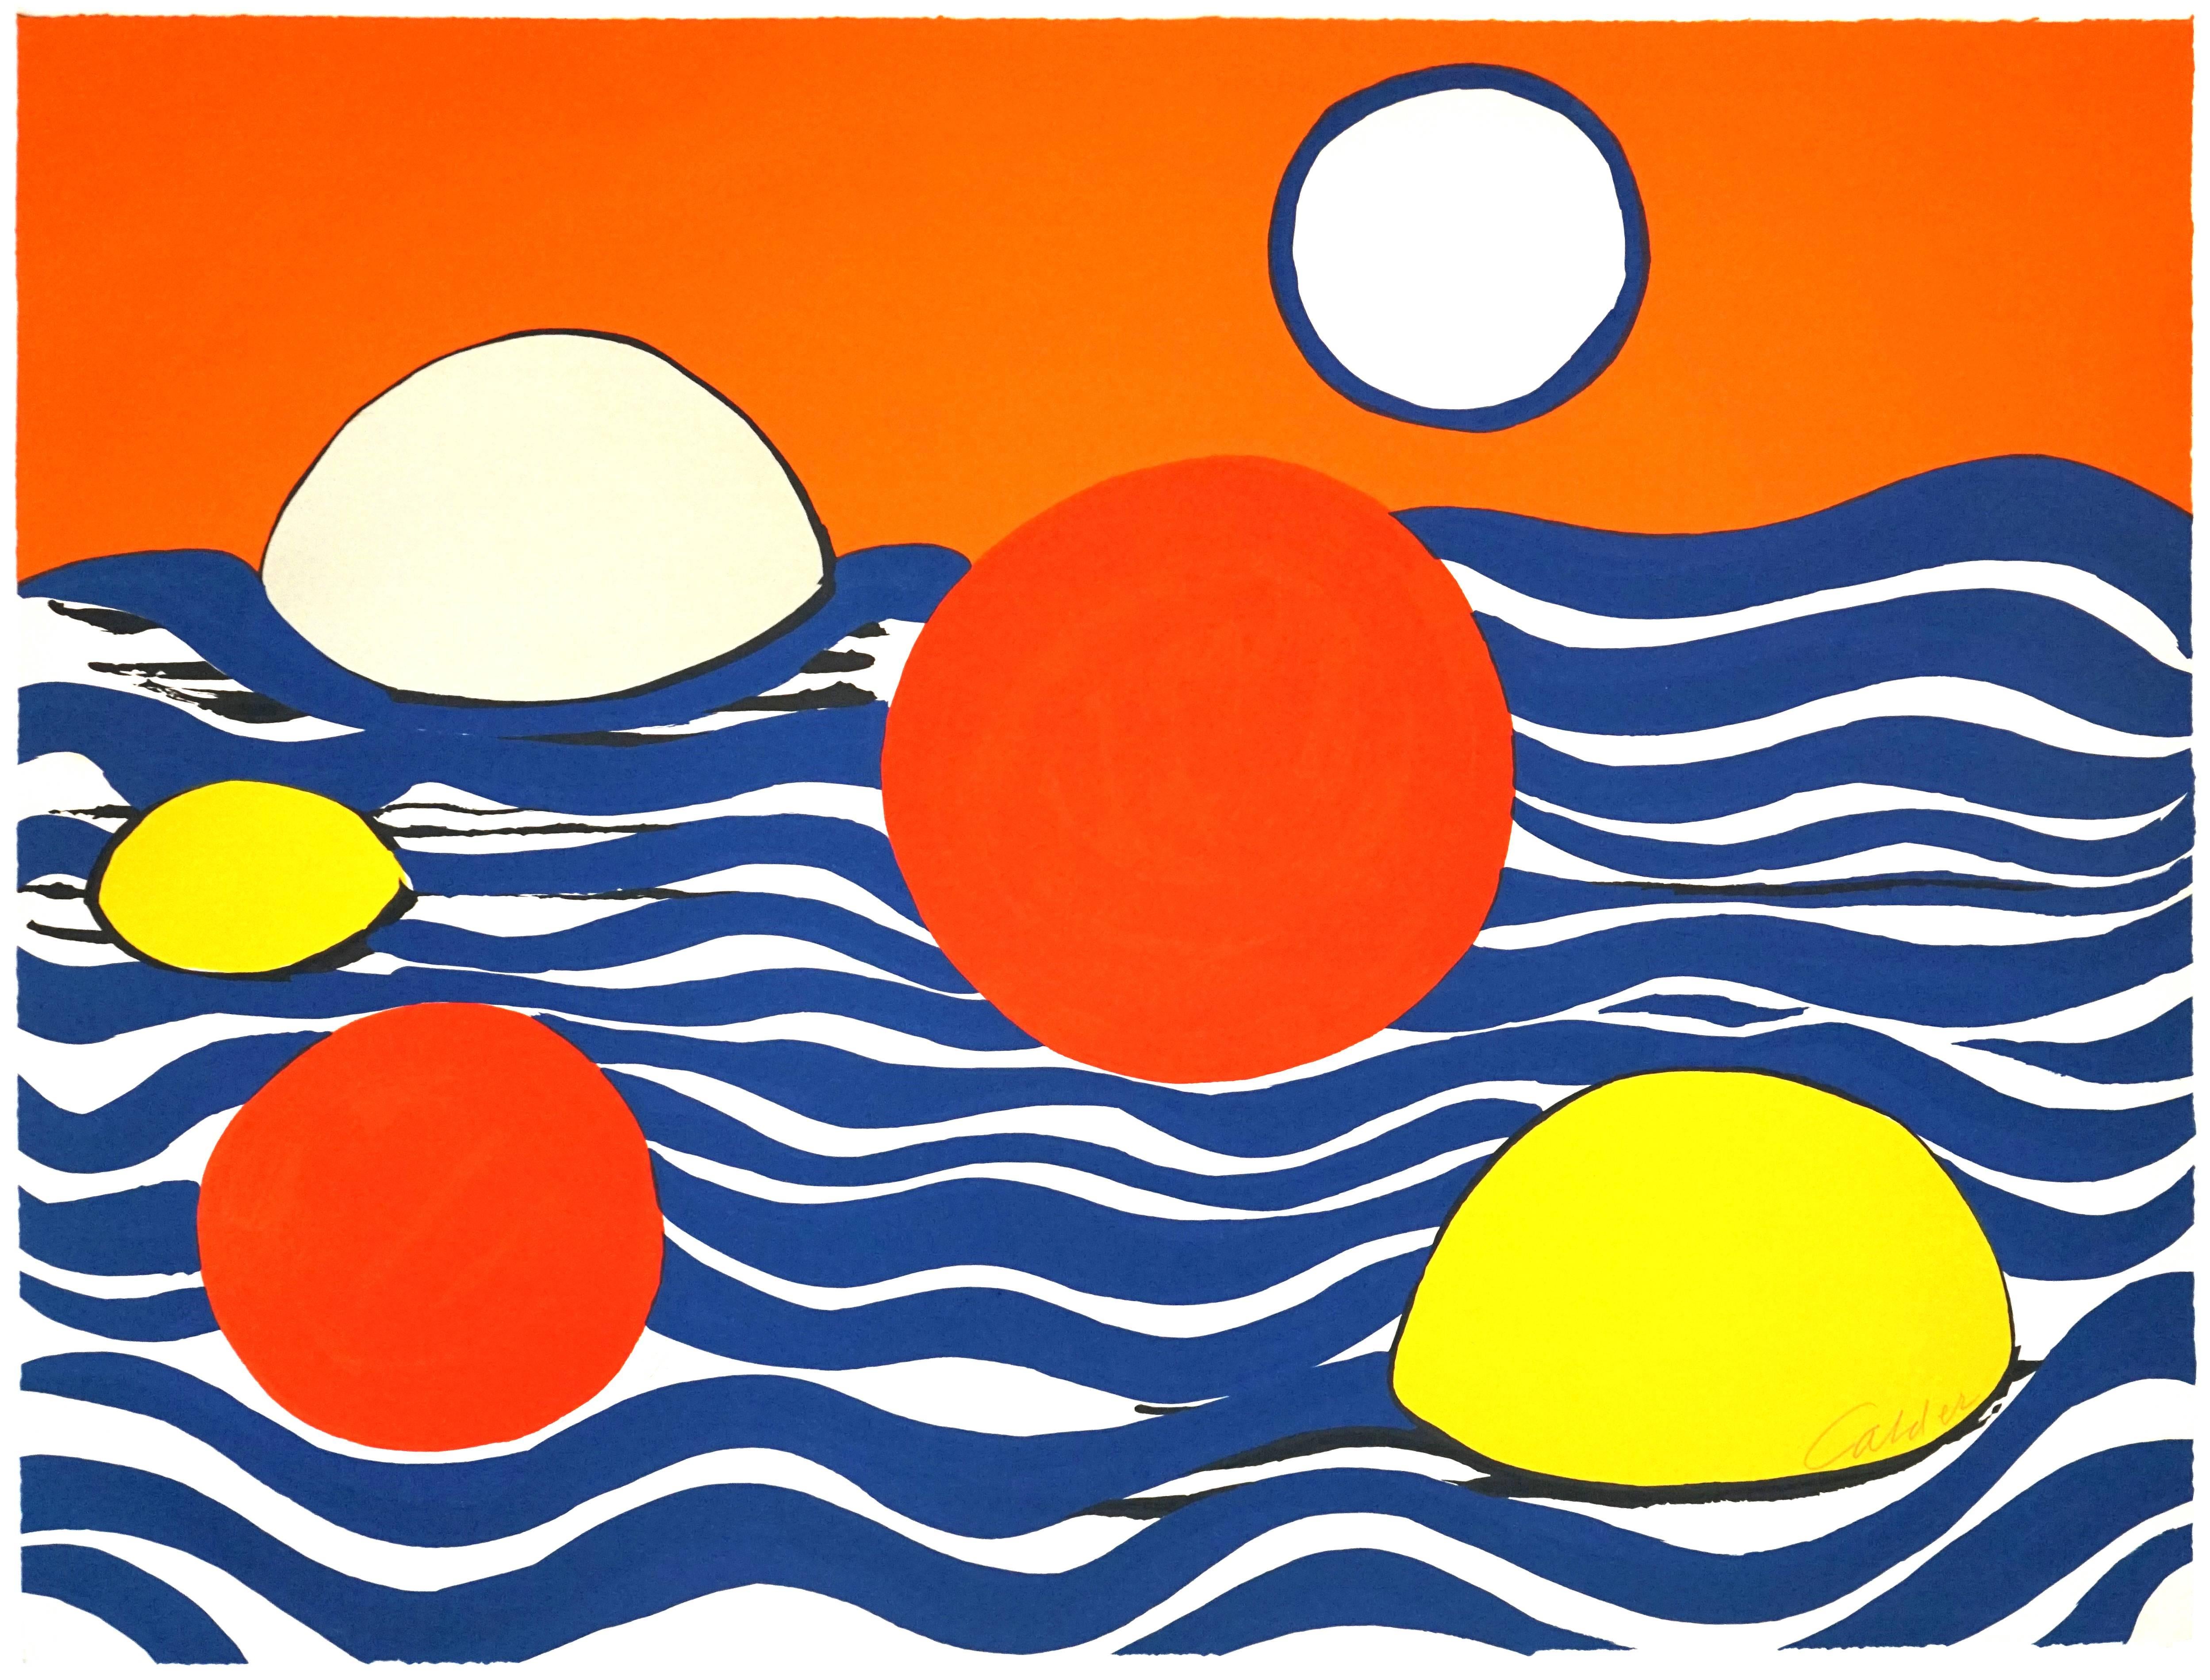 Alexander Calder Abstract Print - Circles and Waves